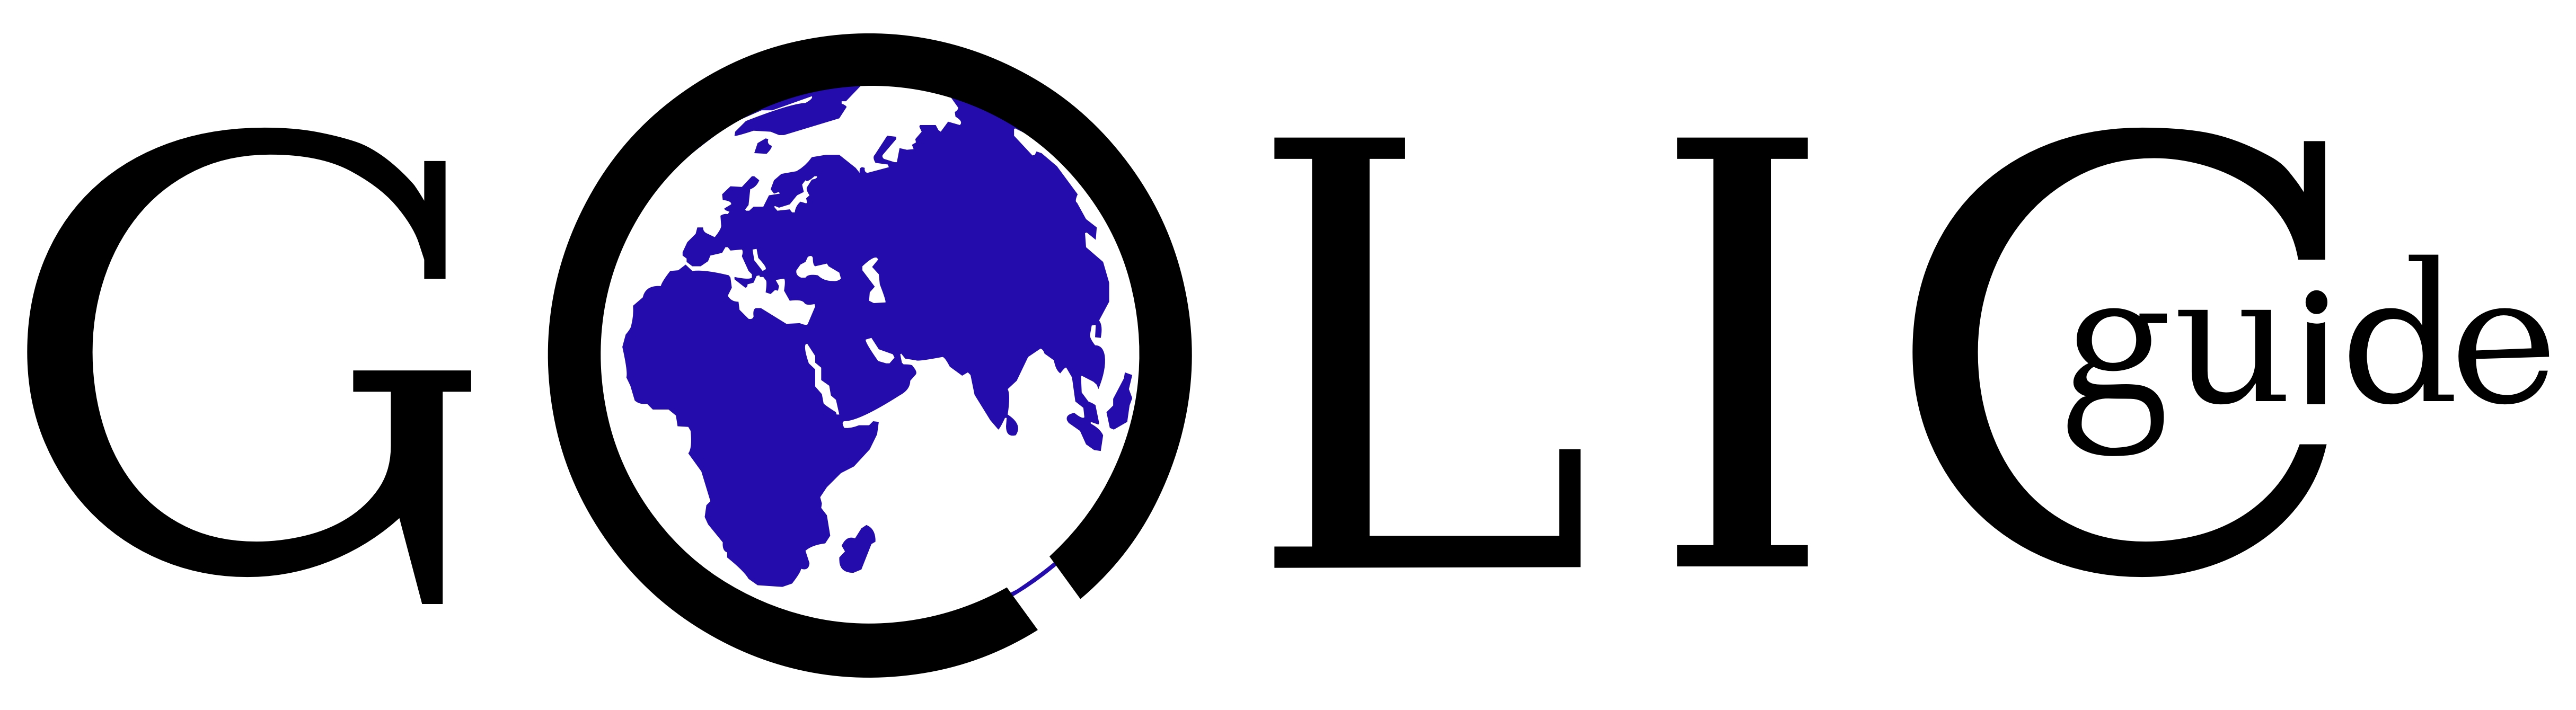 GOLIC logo